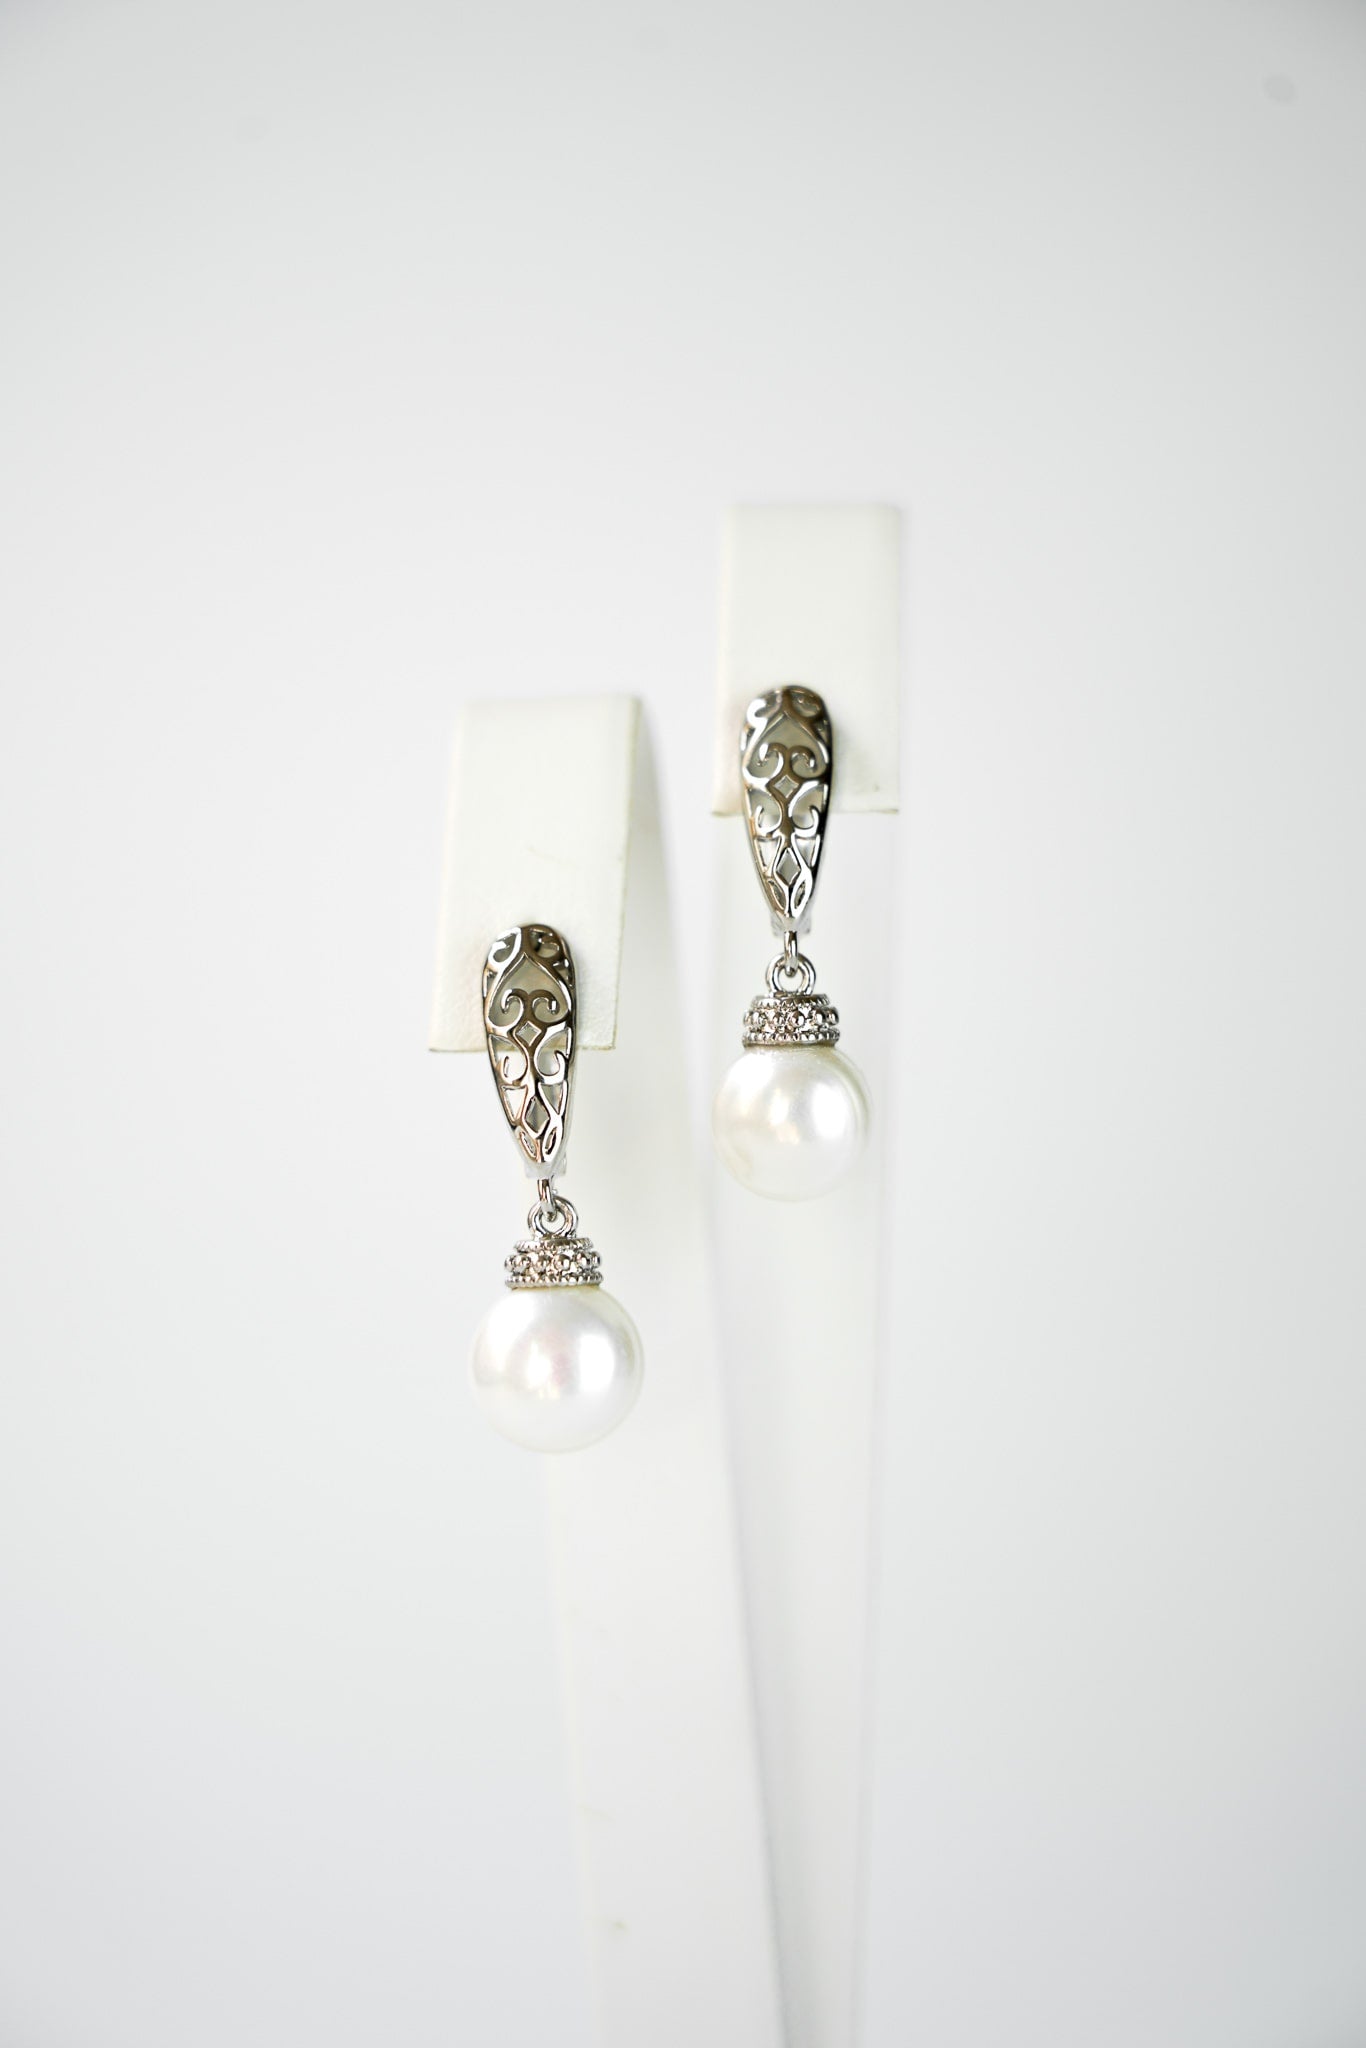 boucles d'oreilles vintage et bohème en argent porté par une mariée avec son collier et sa robe de mariage avec une attache en forme géométrique et une perle en pendentif